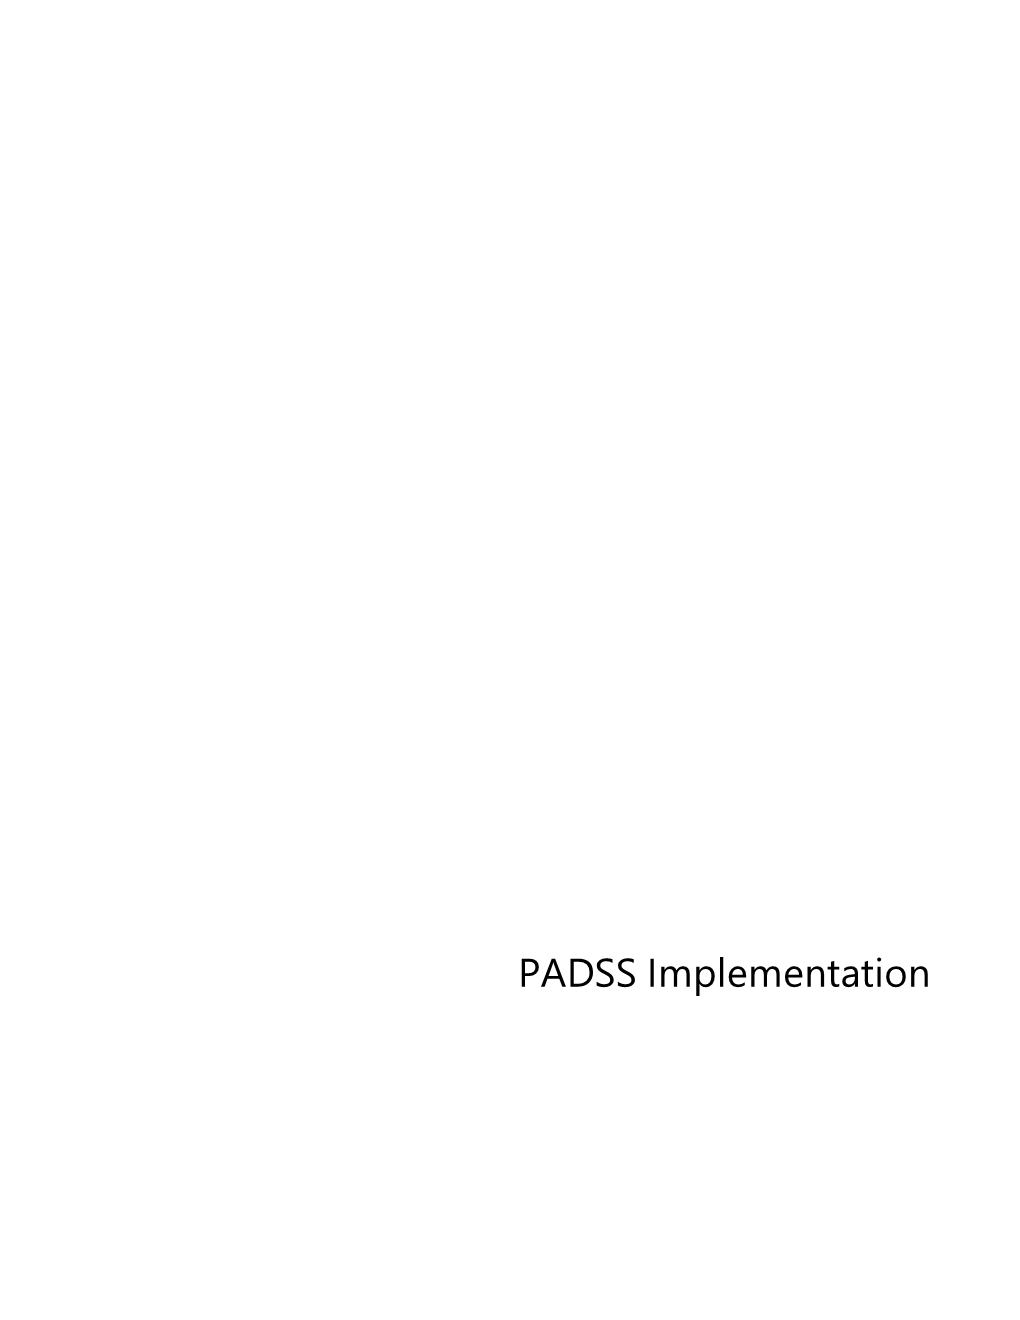 PA DSS Implementation for the Raiser's Edge